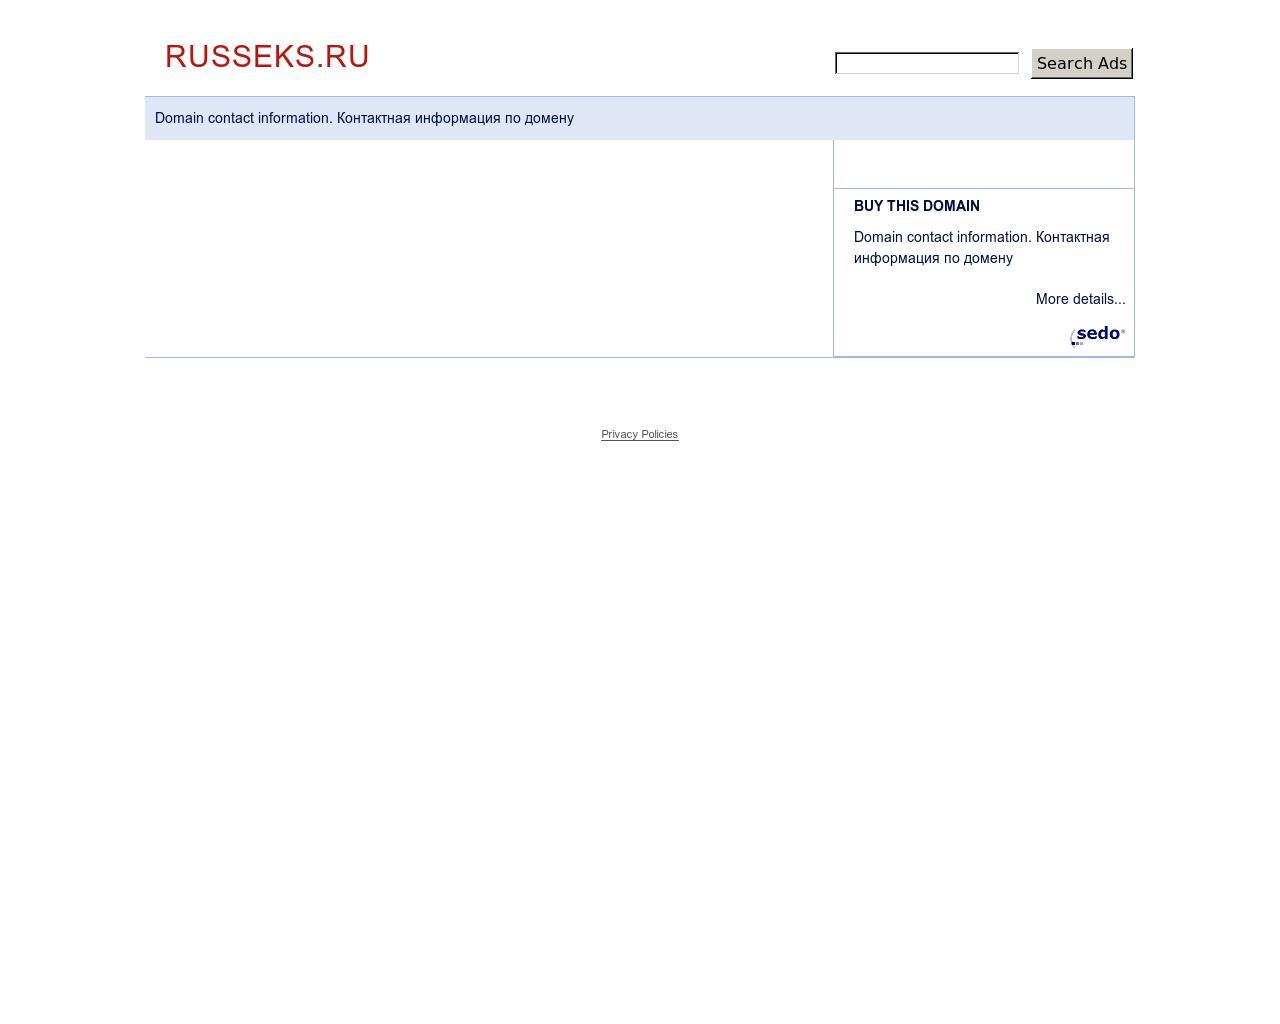 Изображение сайта russeks.ru в разрешении 1280x1024